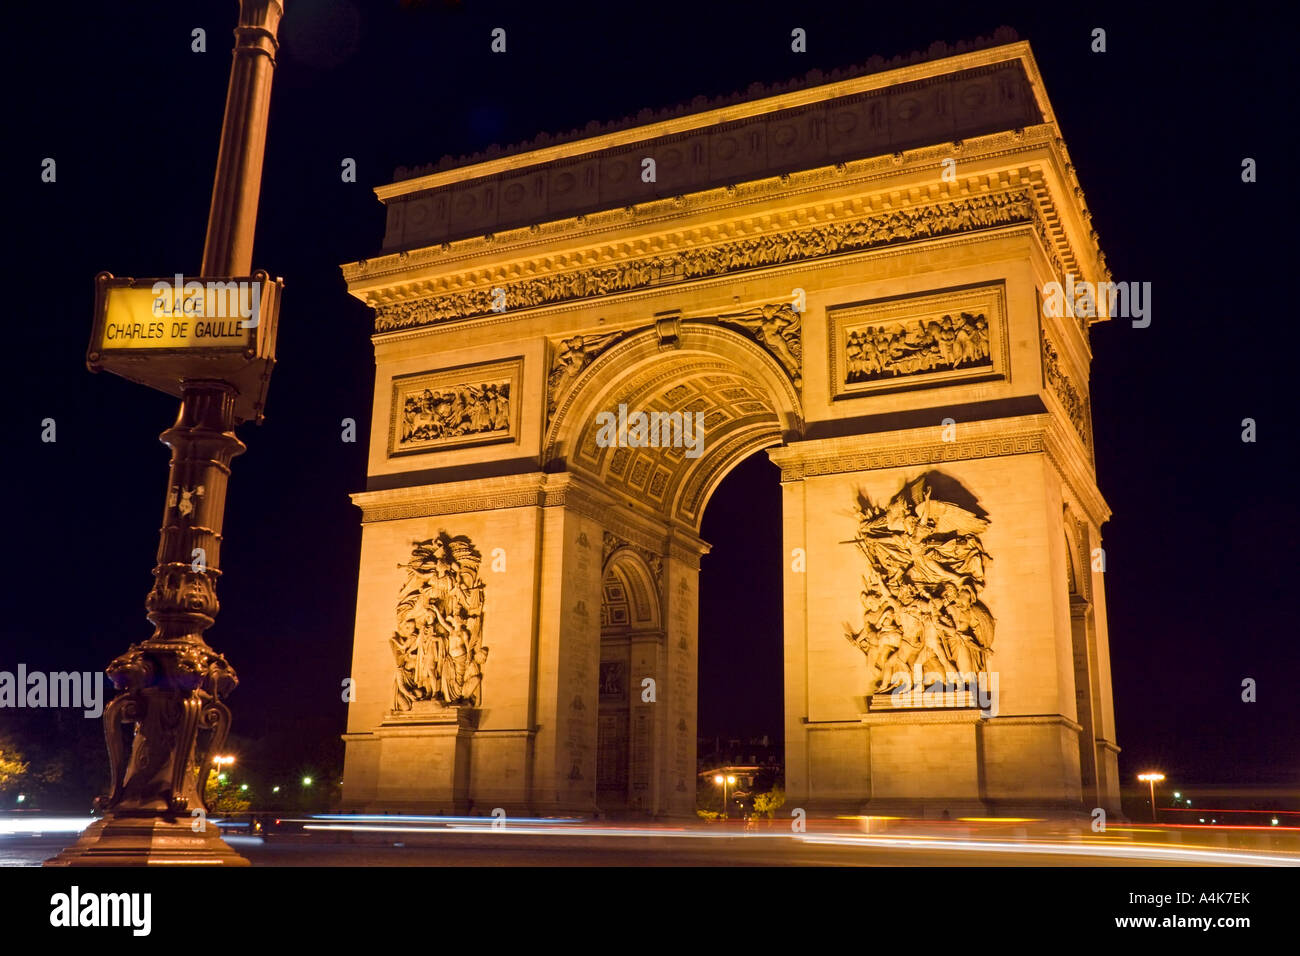 L'Arc de Triomphe de nuit avec une plaque de rue au premier plan - Charles de Gaulle, Paris, France Banque D'Images